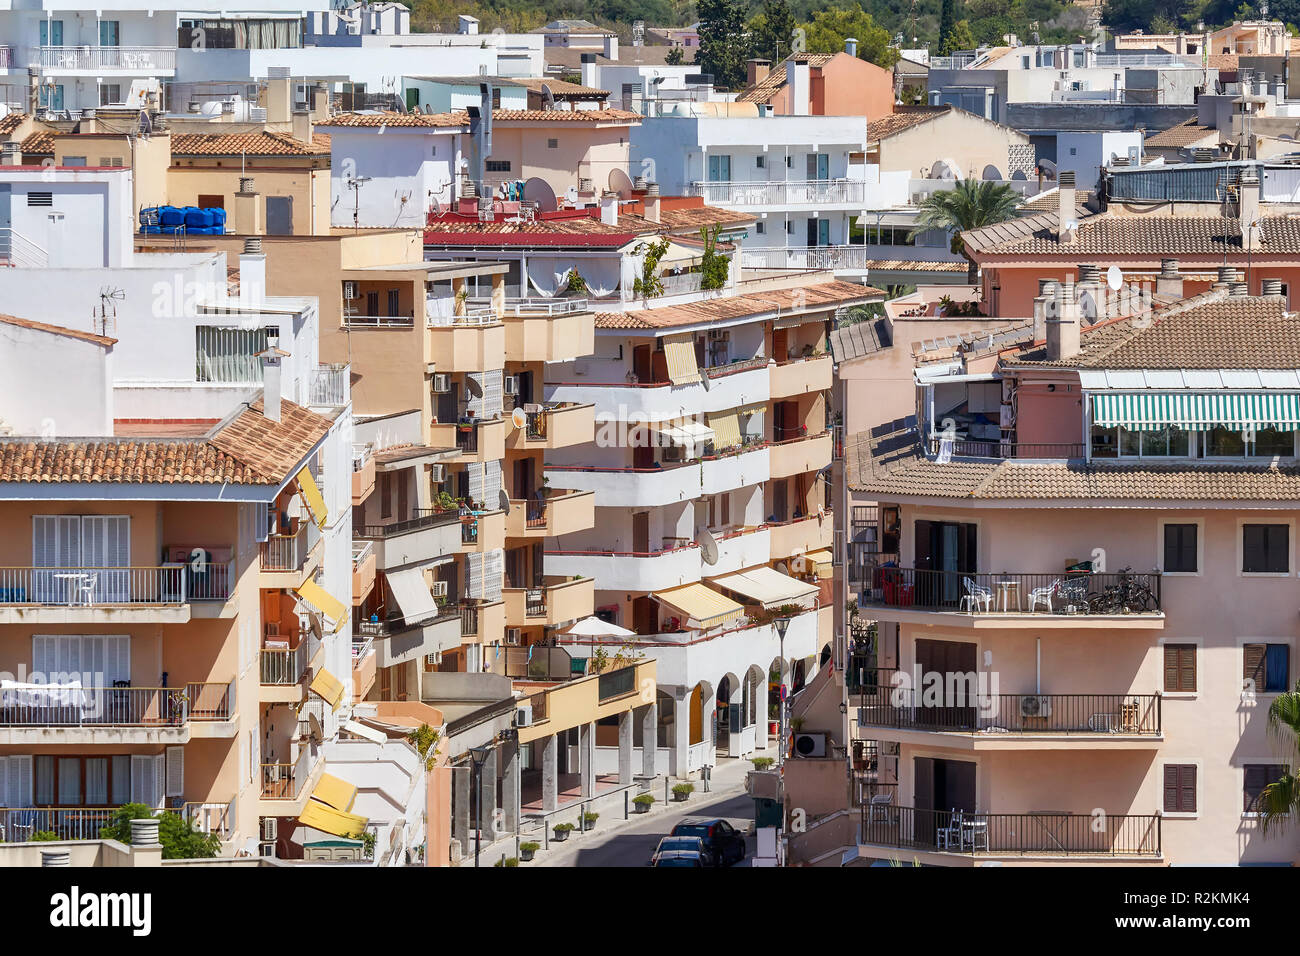 Straße im Port de Alcudia auf Mallorca, Spanien. Stockfoto